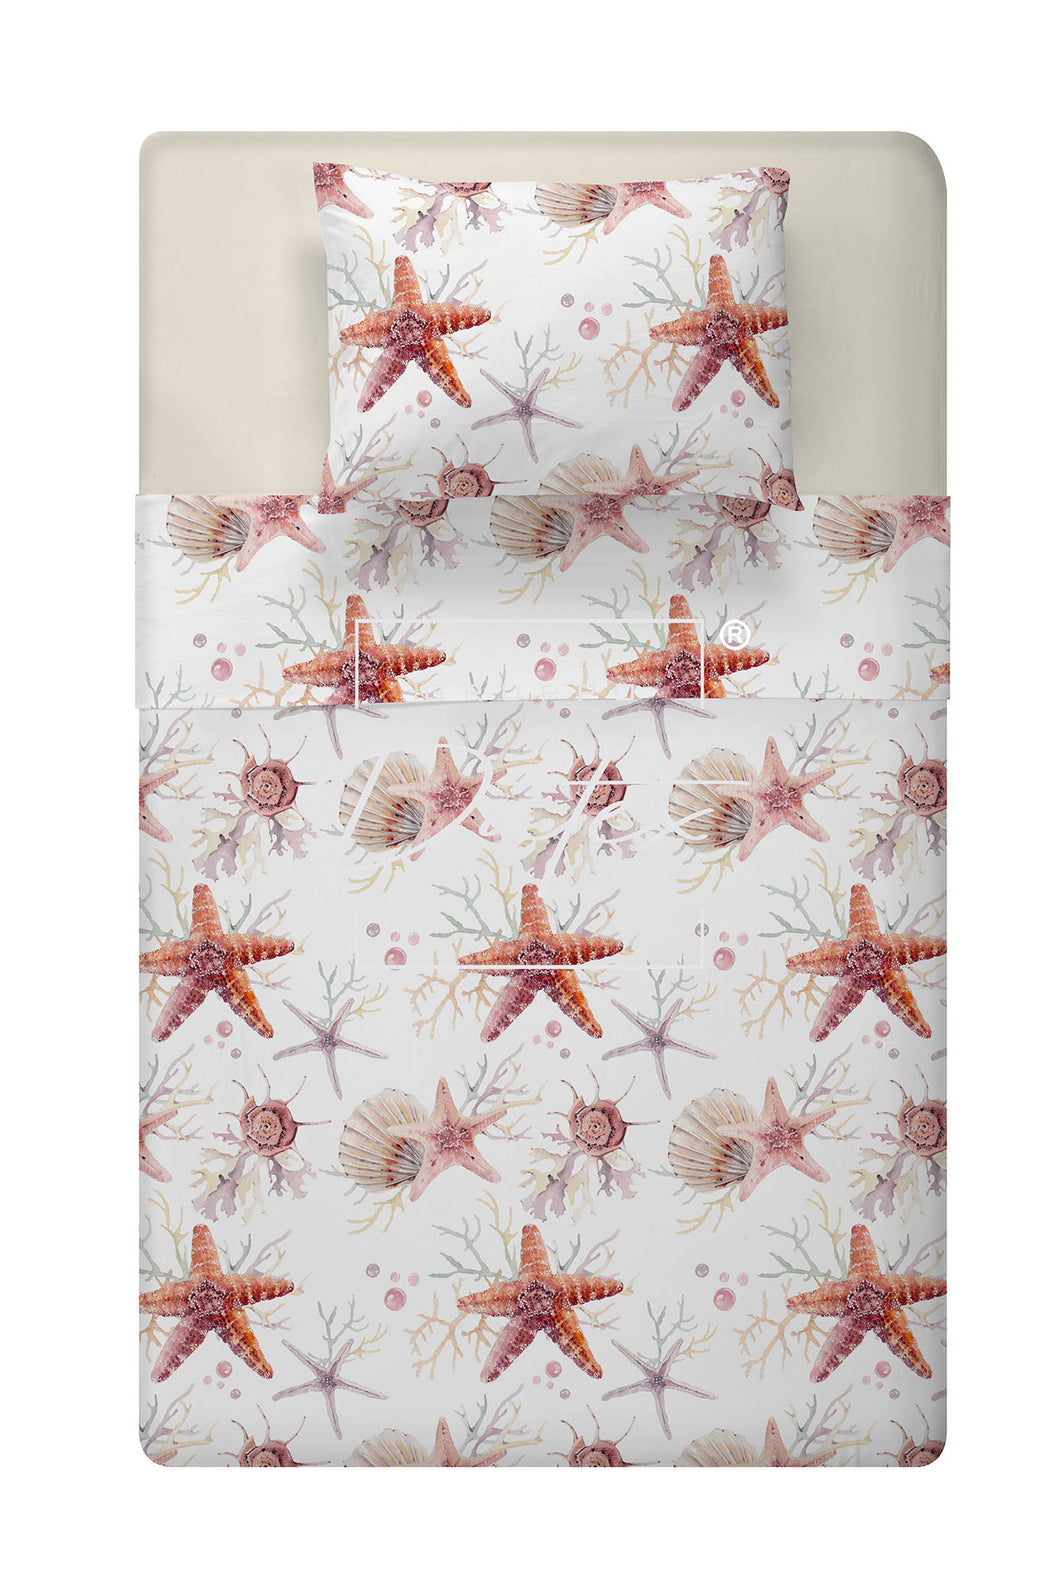 Completo letto Starfish